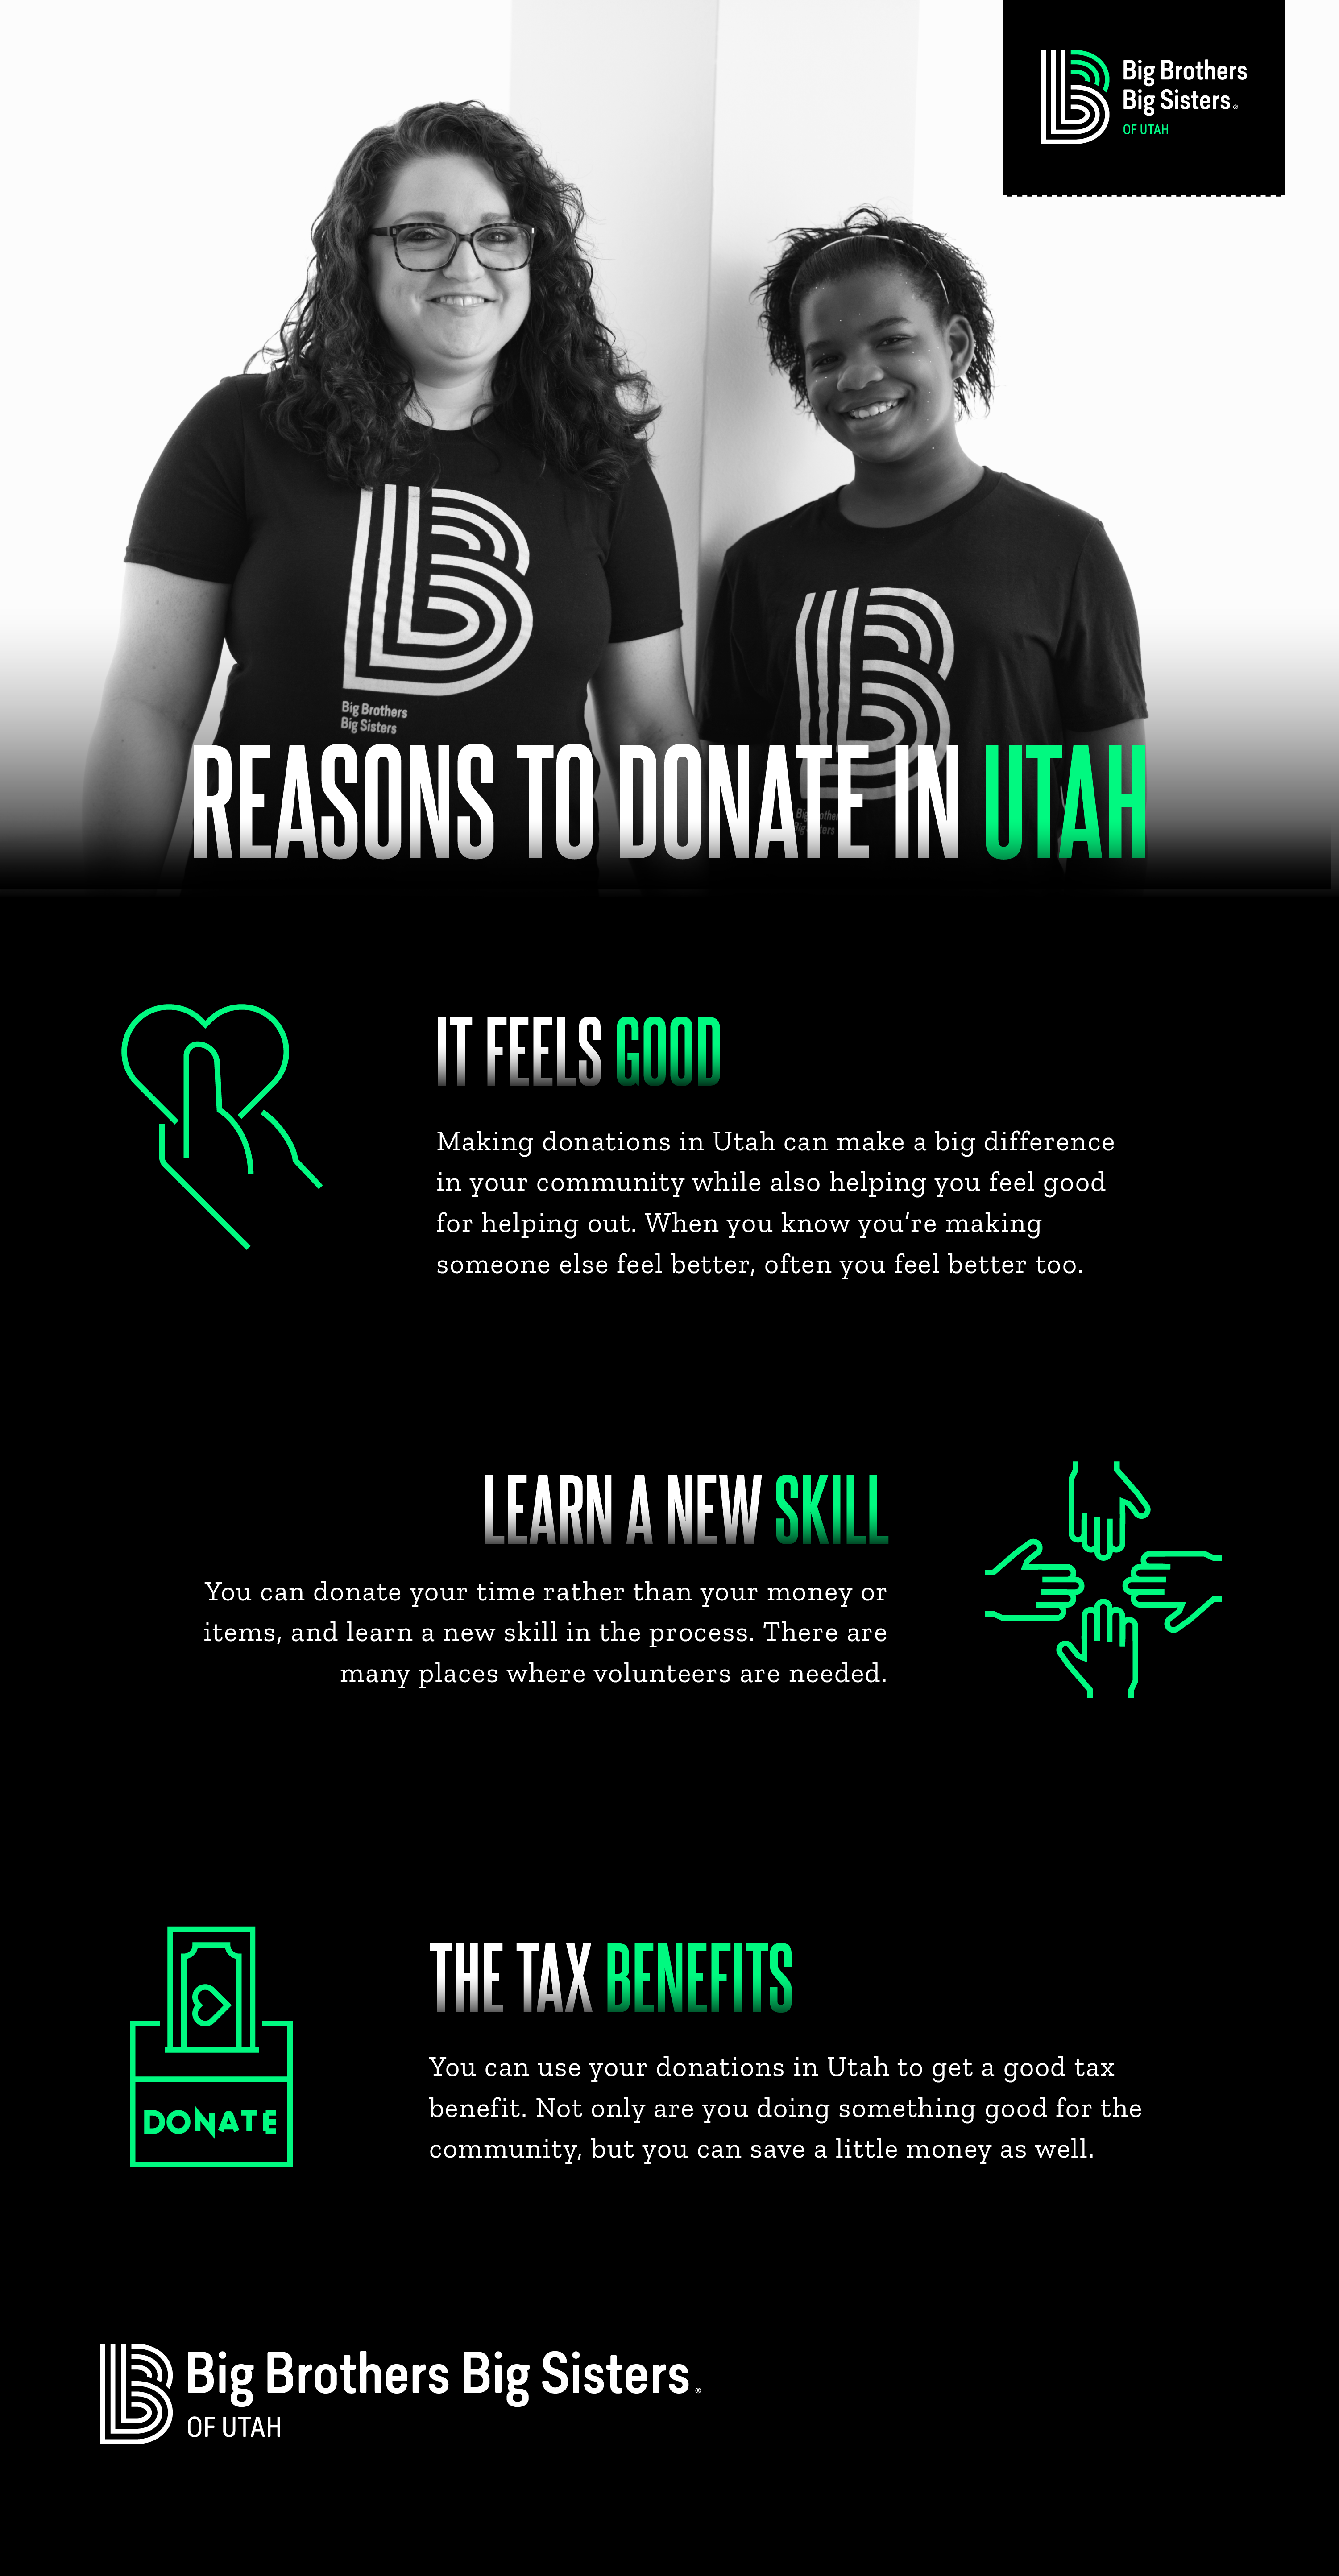 Donations in Utah